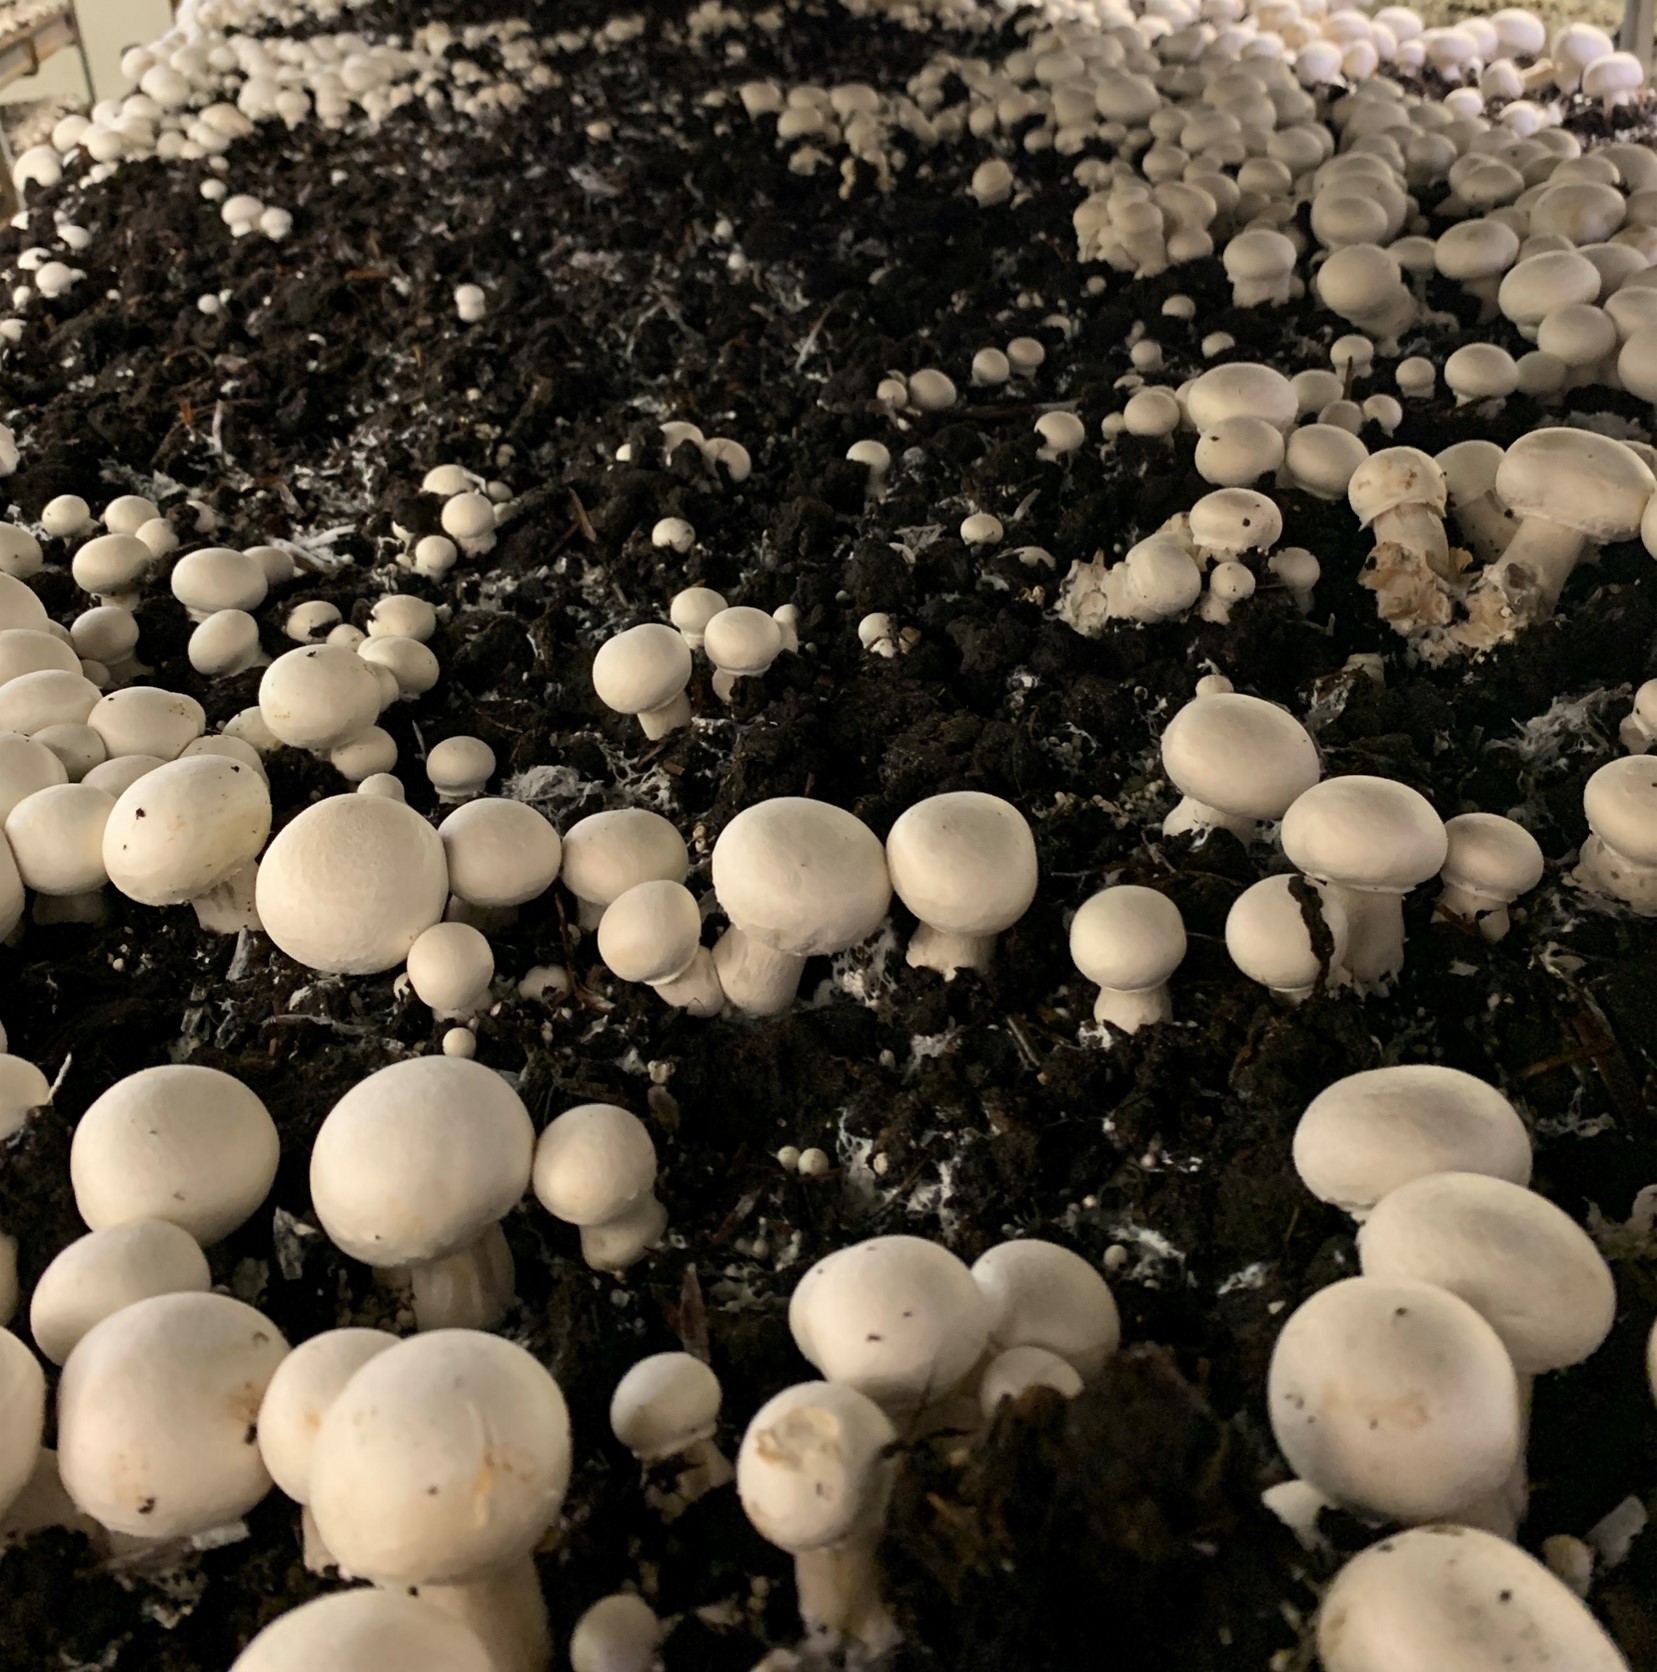 Mushrooms growing in dirt